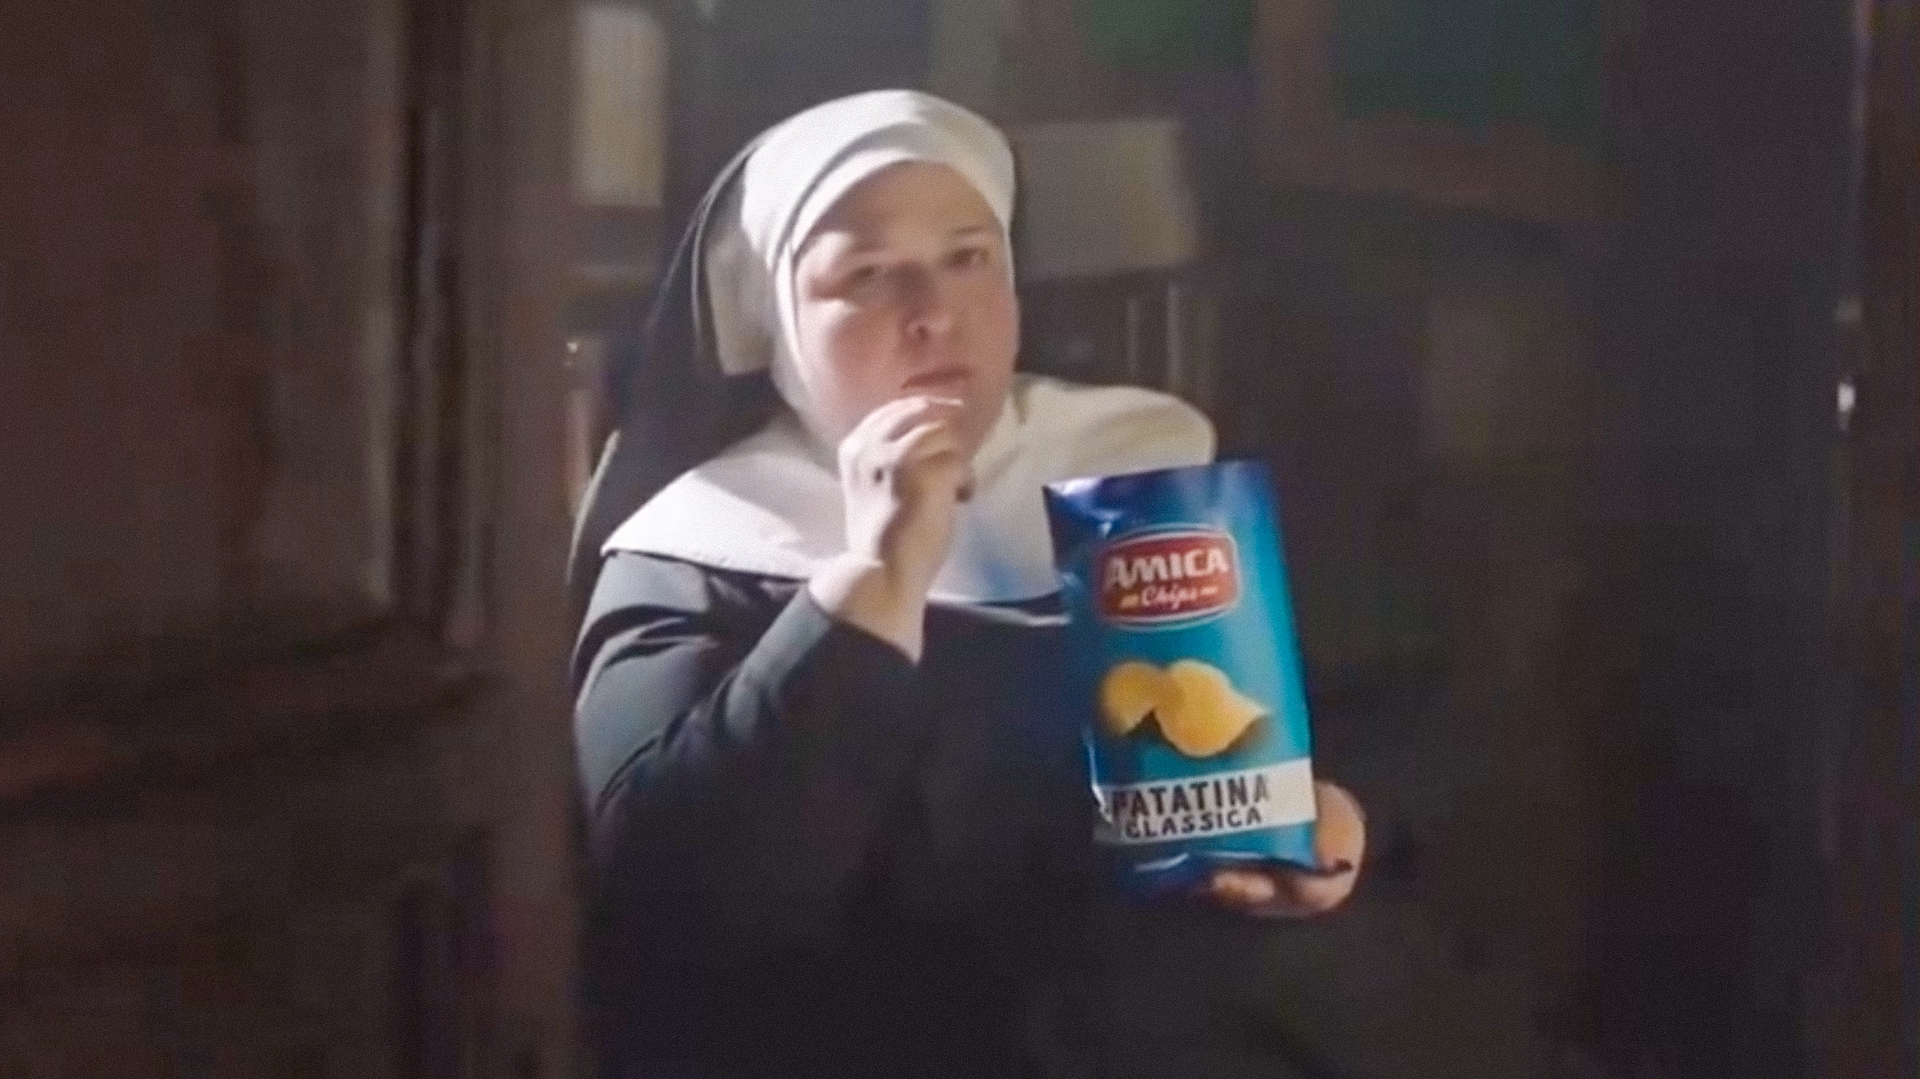 Católicos italianos criticam publicidade que mostra freiras com batatas fritas